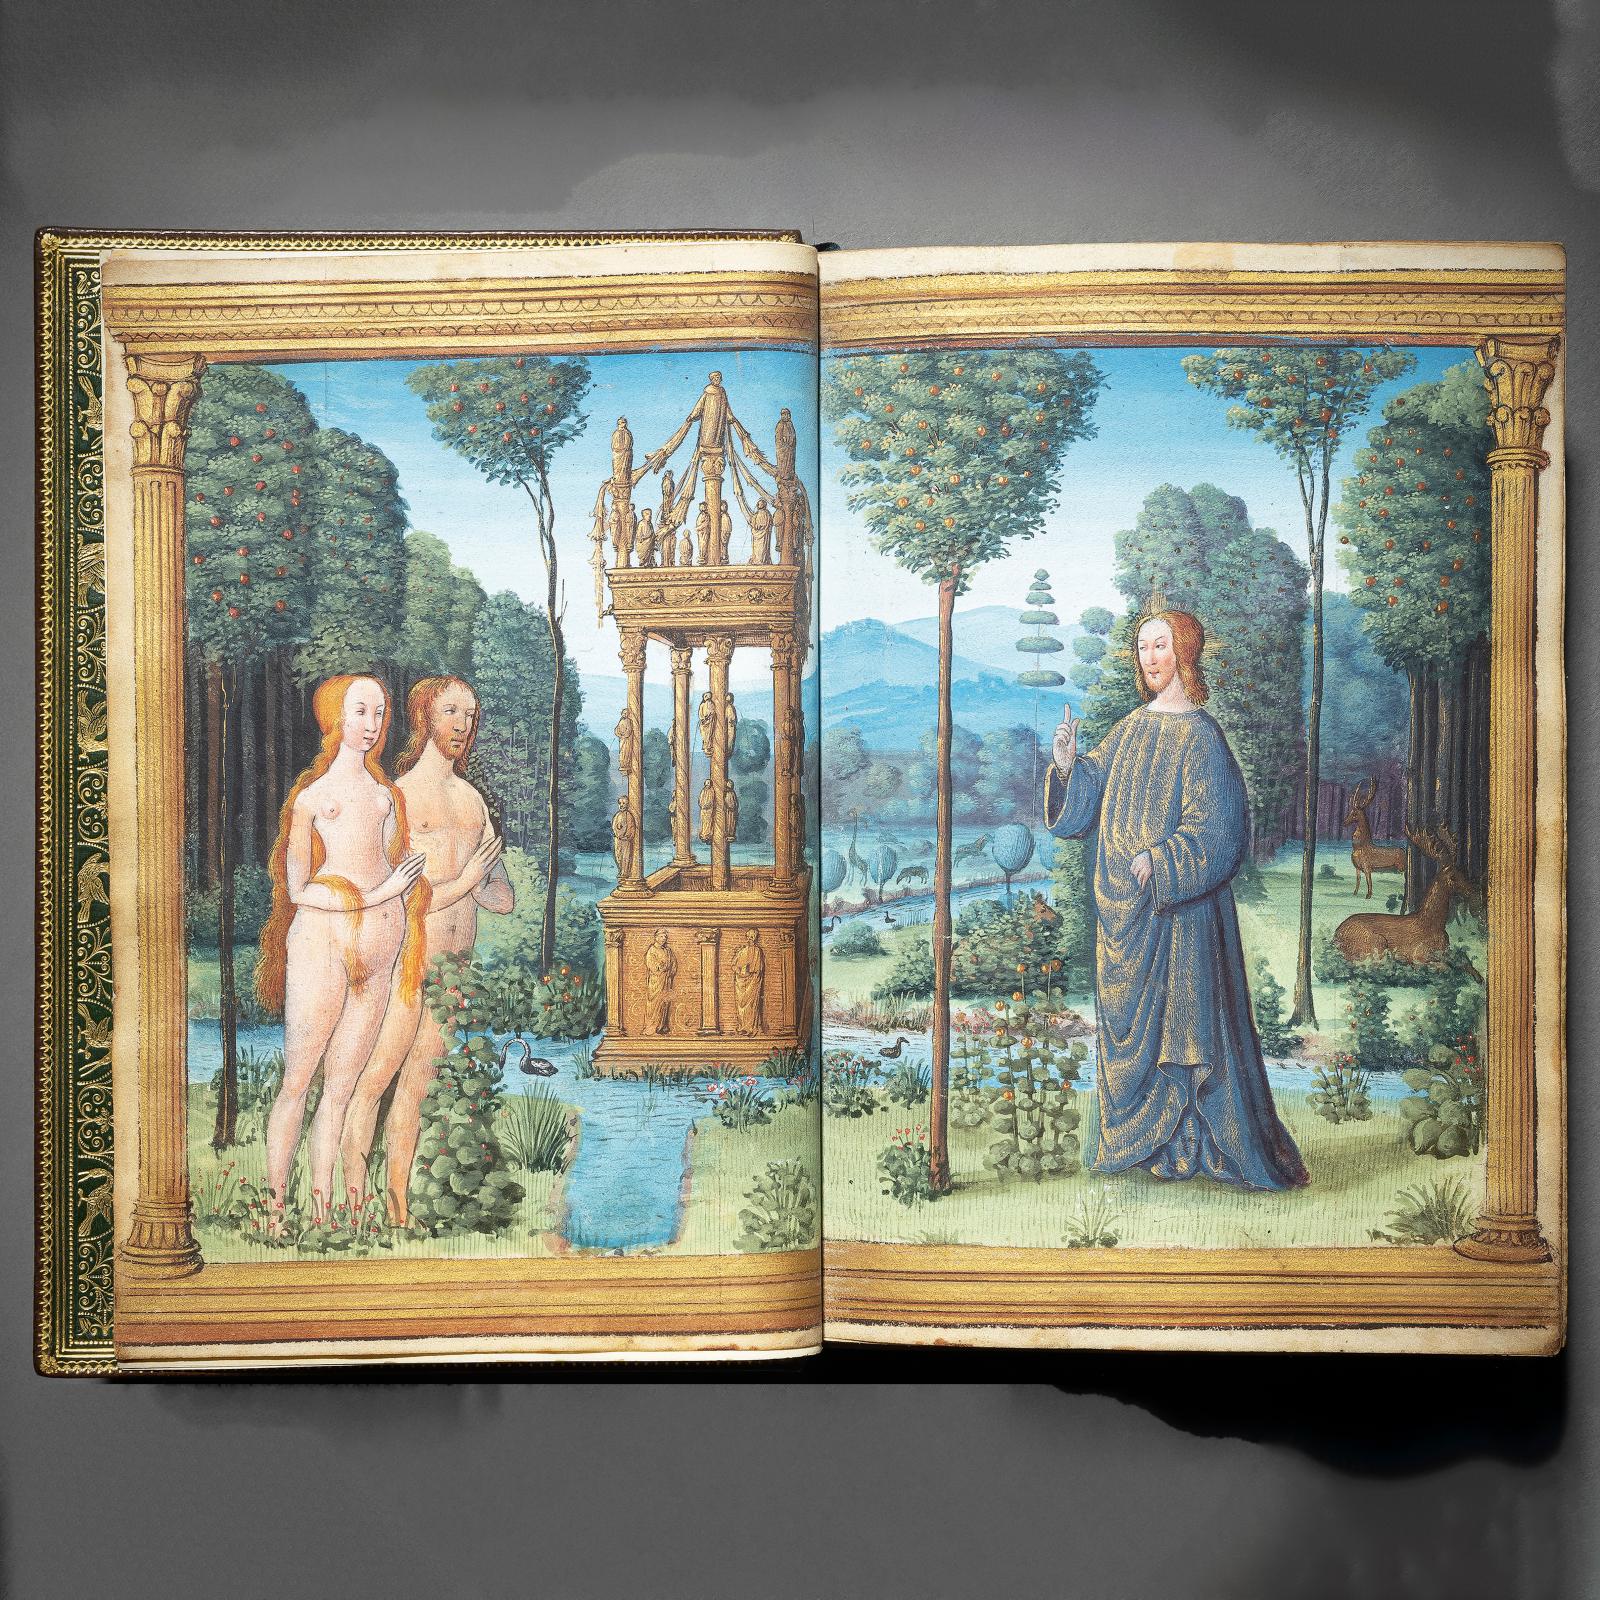 749 700 €Livre d’heures à l’usage de Rome (Heures de la Vierge et Office des morts), très certainement Bourges, vers 1500-1510, manuscrit 